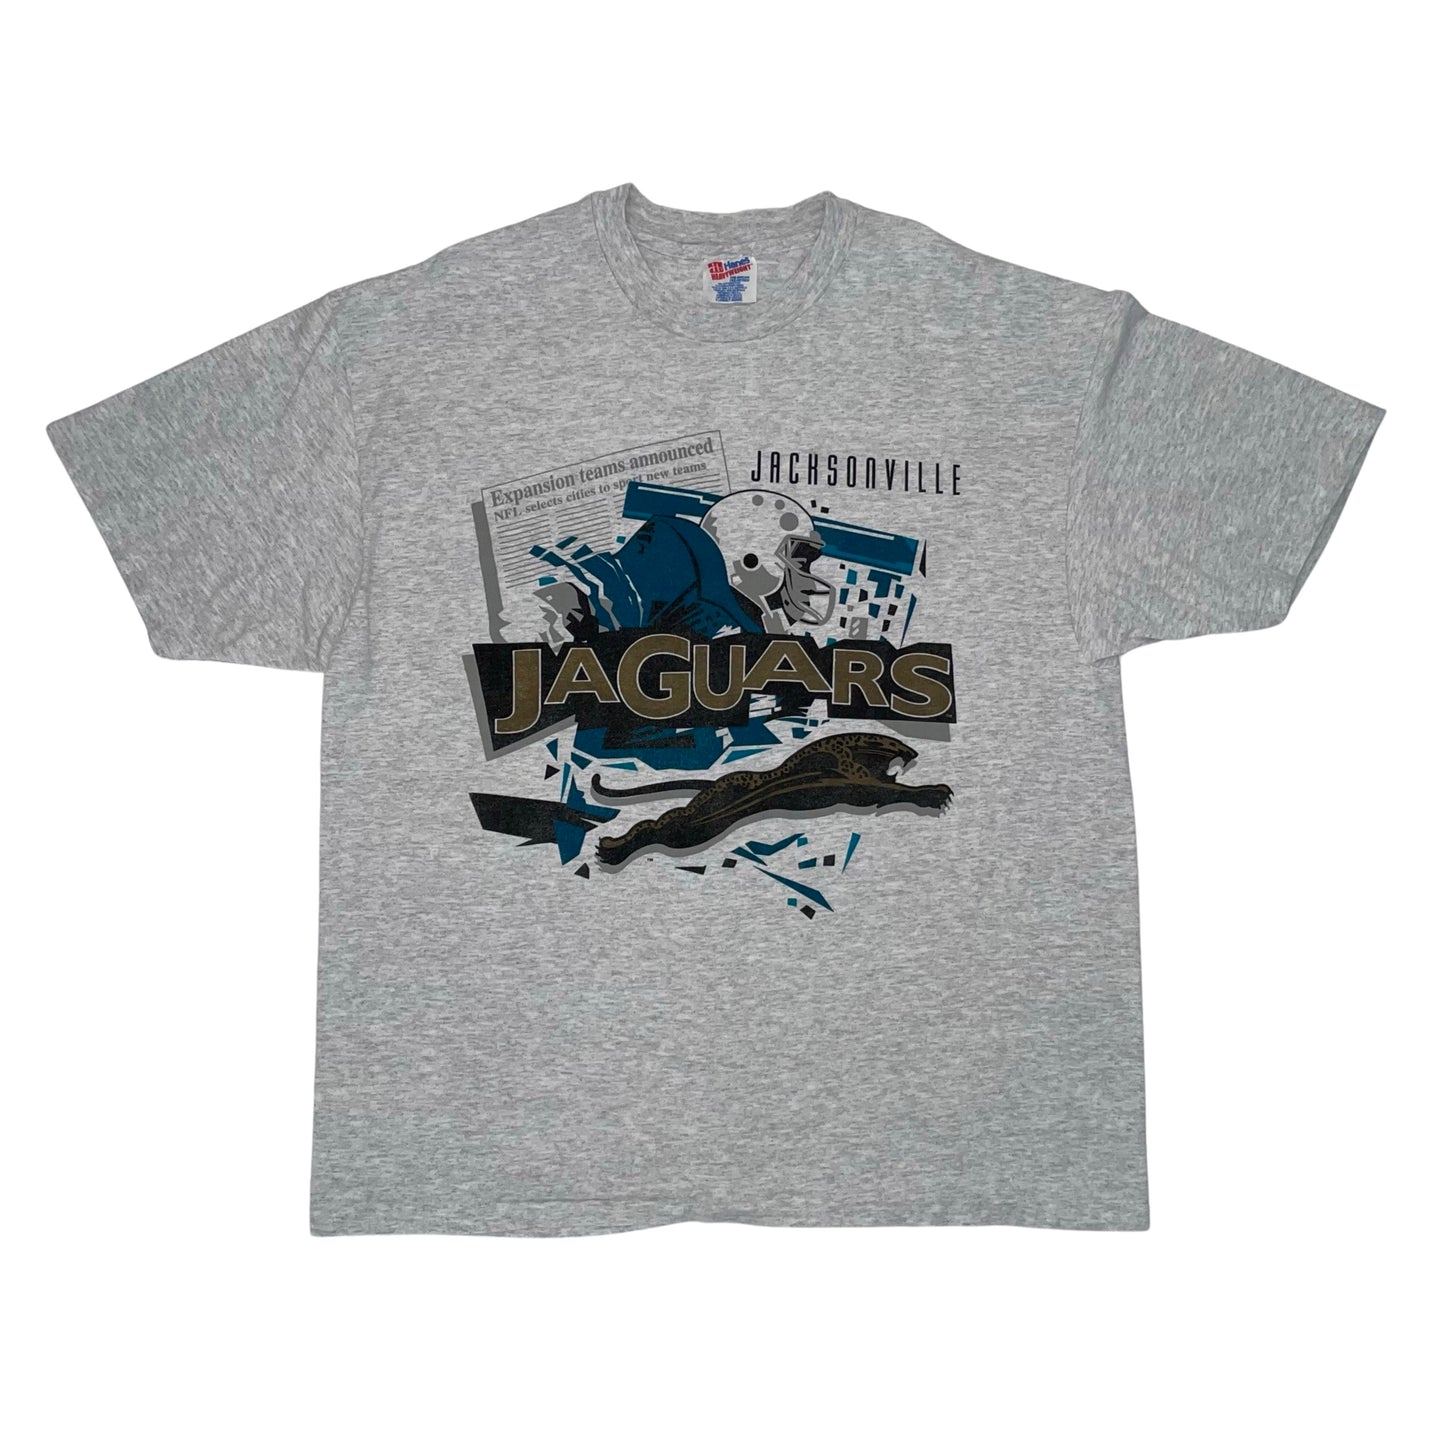 Vintage Jacksonville Jaguars banned logo shirt size XL